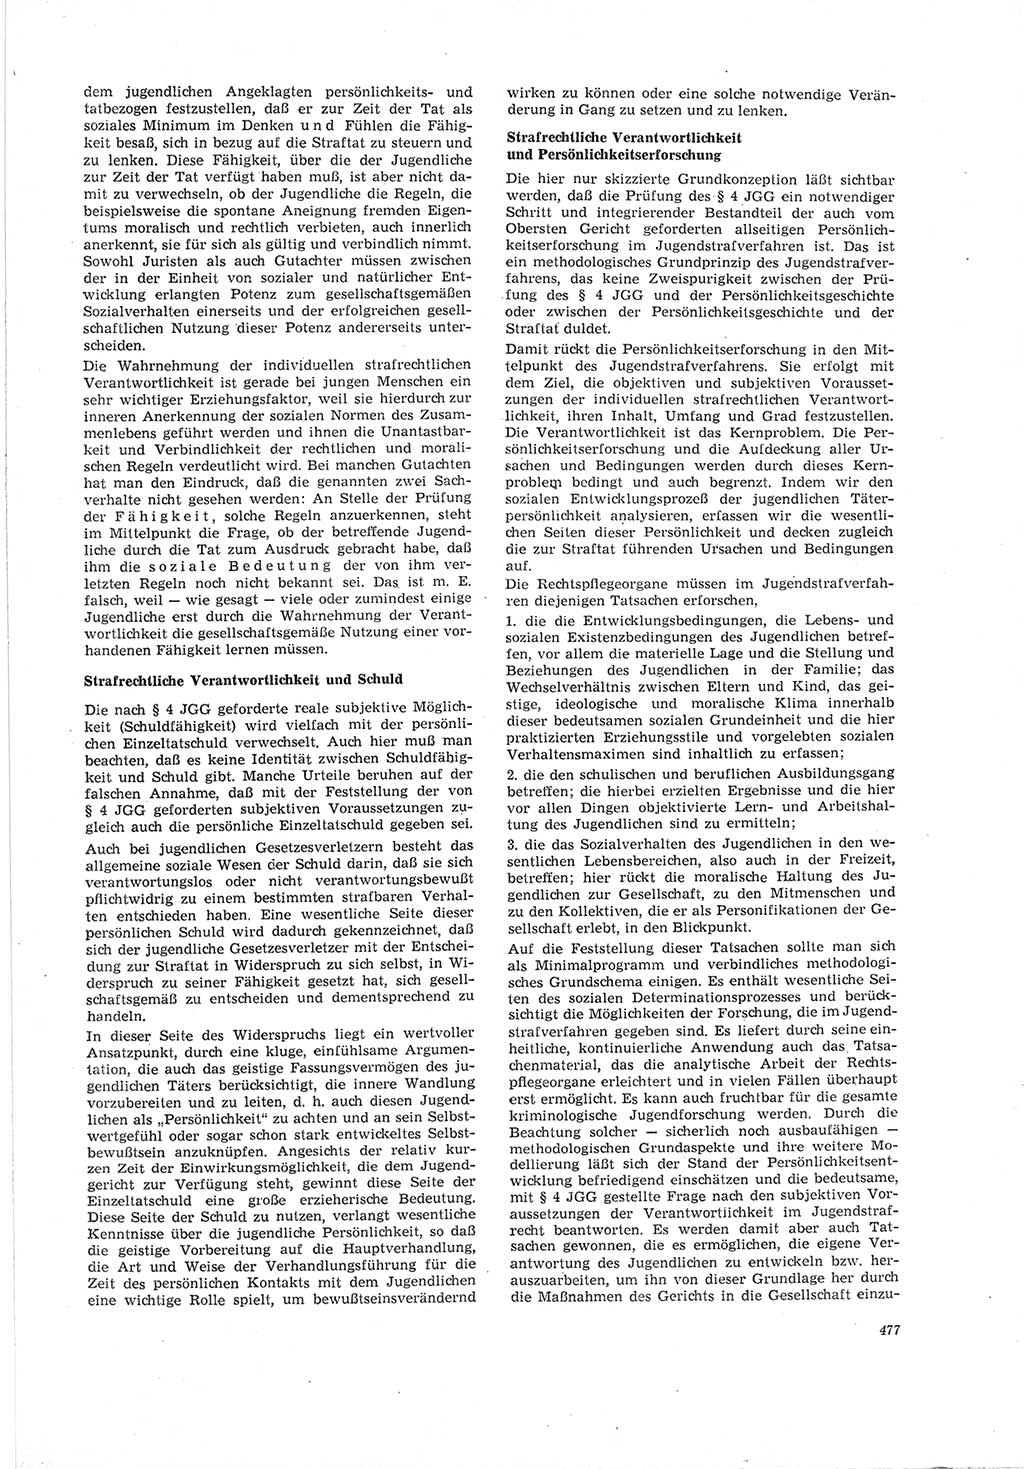 Neue Justiz (NJ), Zeitschrift für Recht und Rechtswissenschaft [Deutsche Demokratische Republik (DDR)], 19. Jahrgang 1965, Seite 477 (NJ DDR 1965, S. 477)